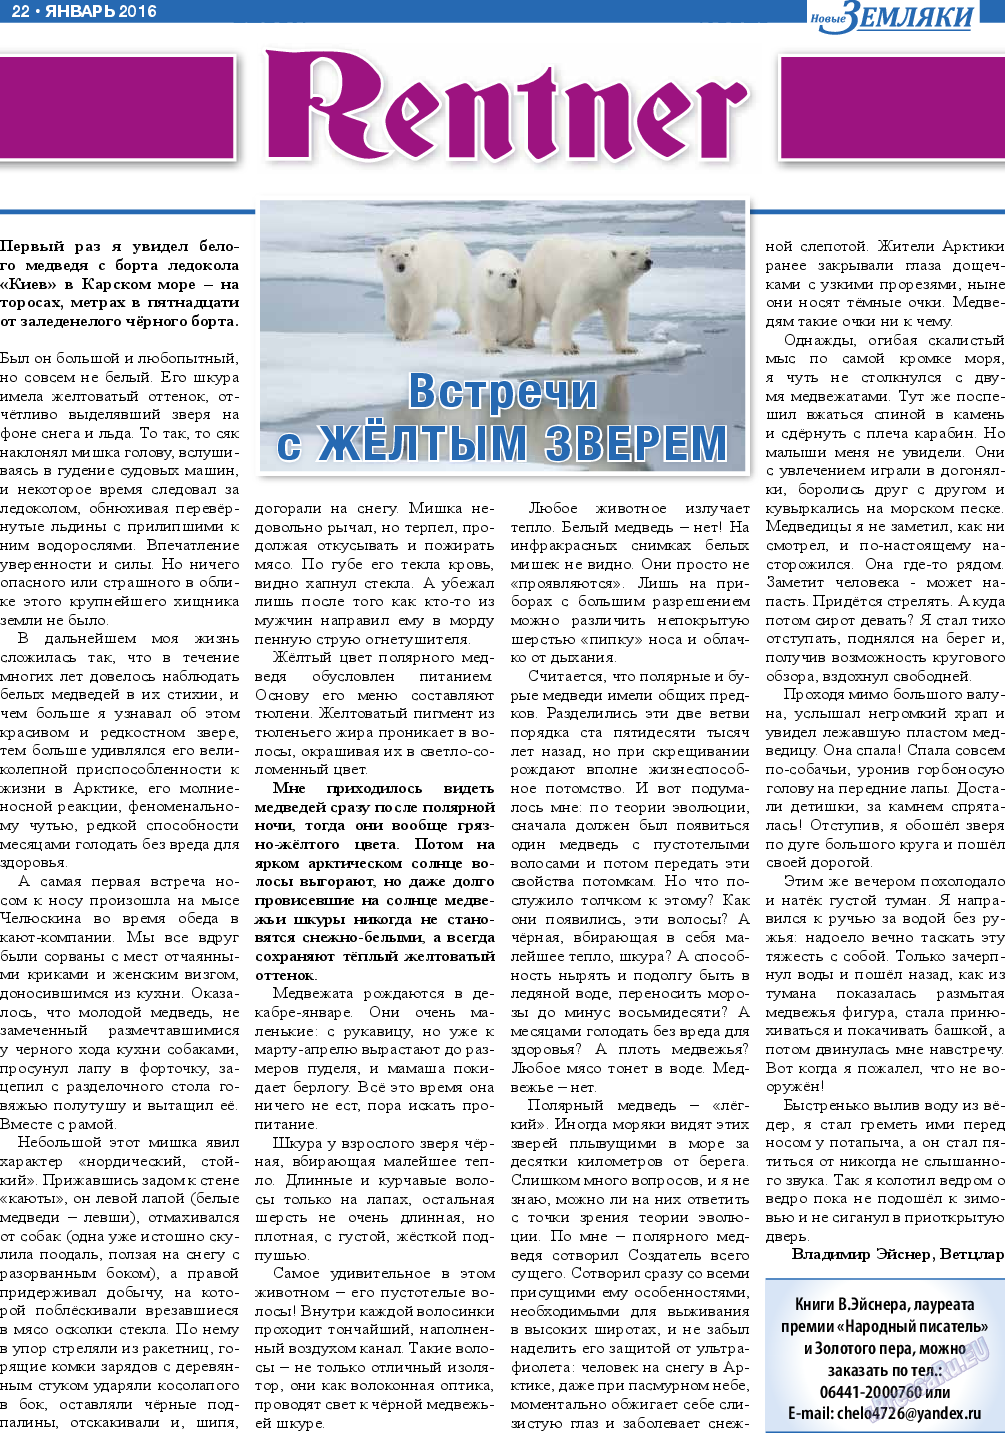 Новые Земляки, газета. 2016 №1 стр.22